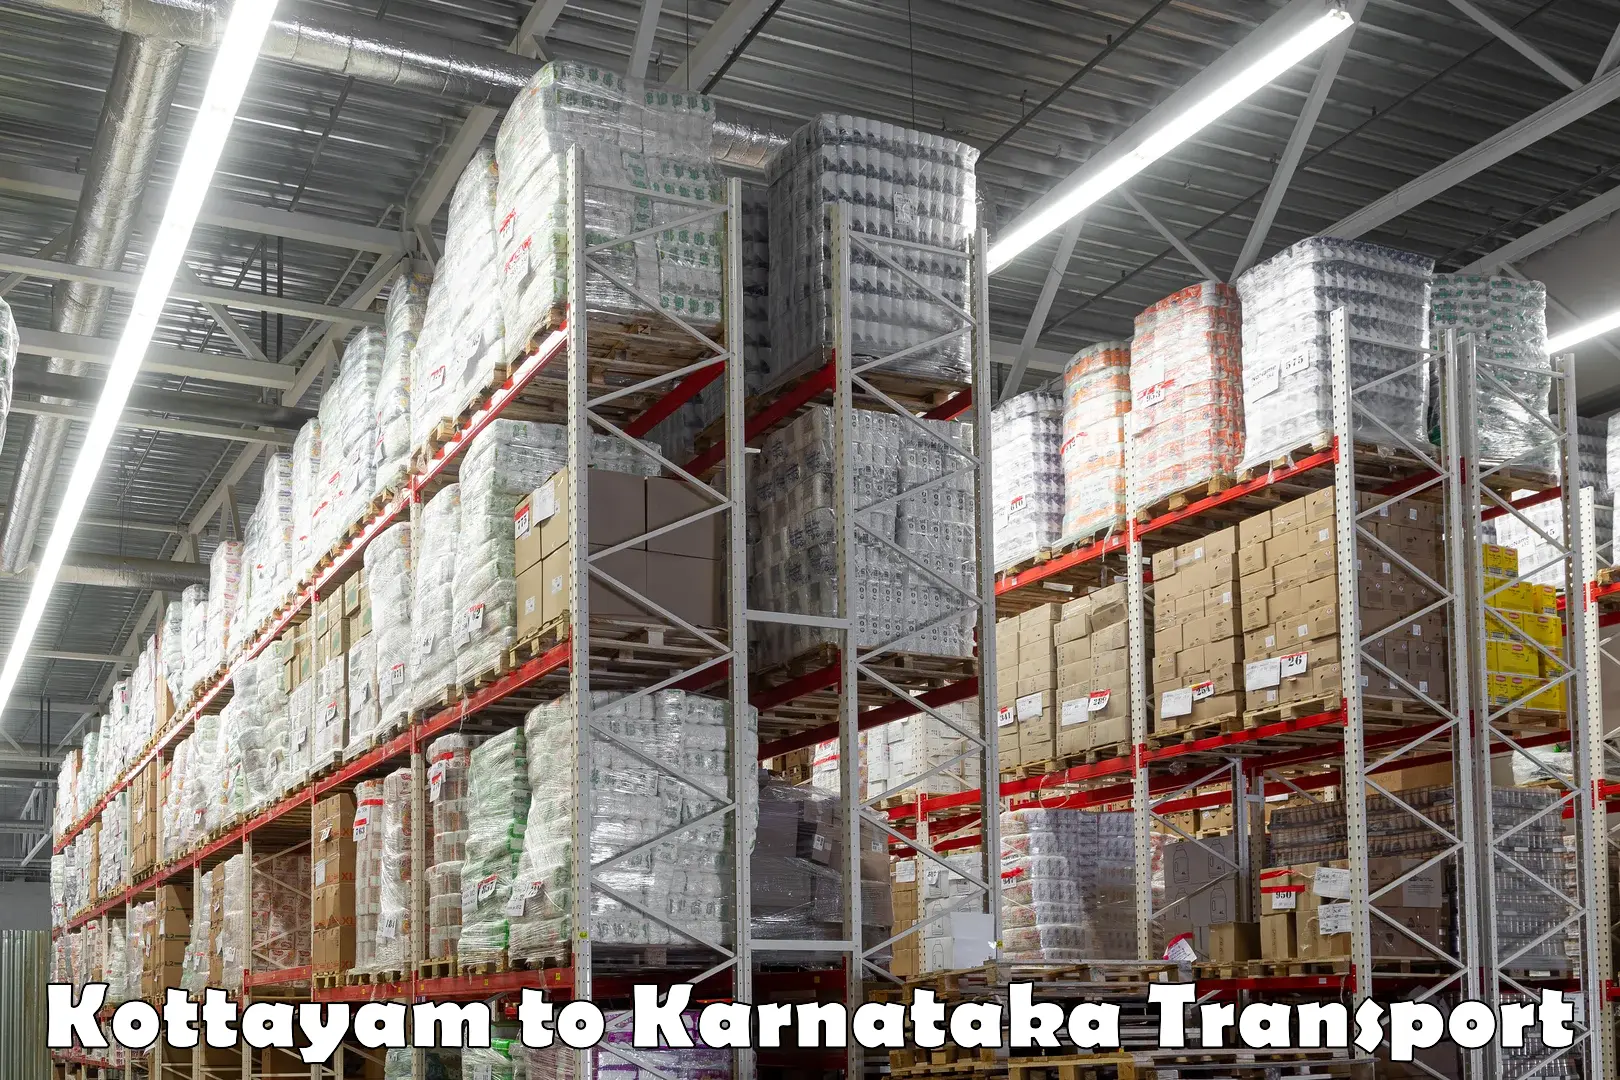 Bike shipping service Kottayam to Mangalore